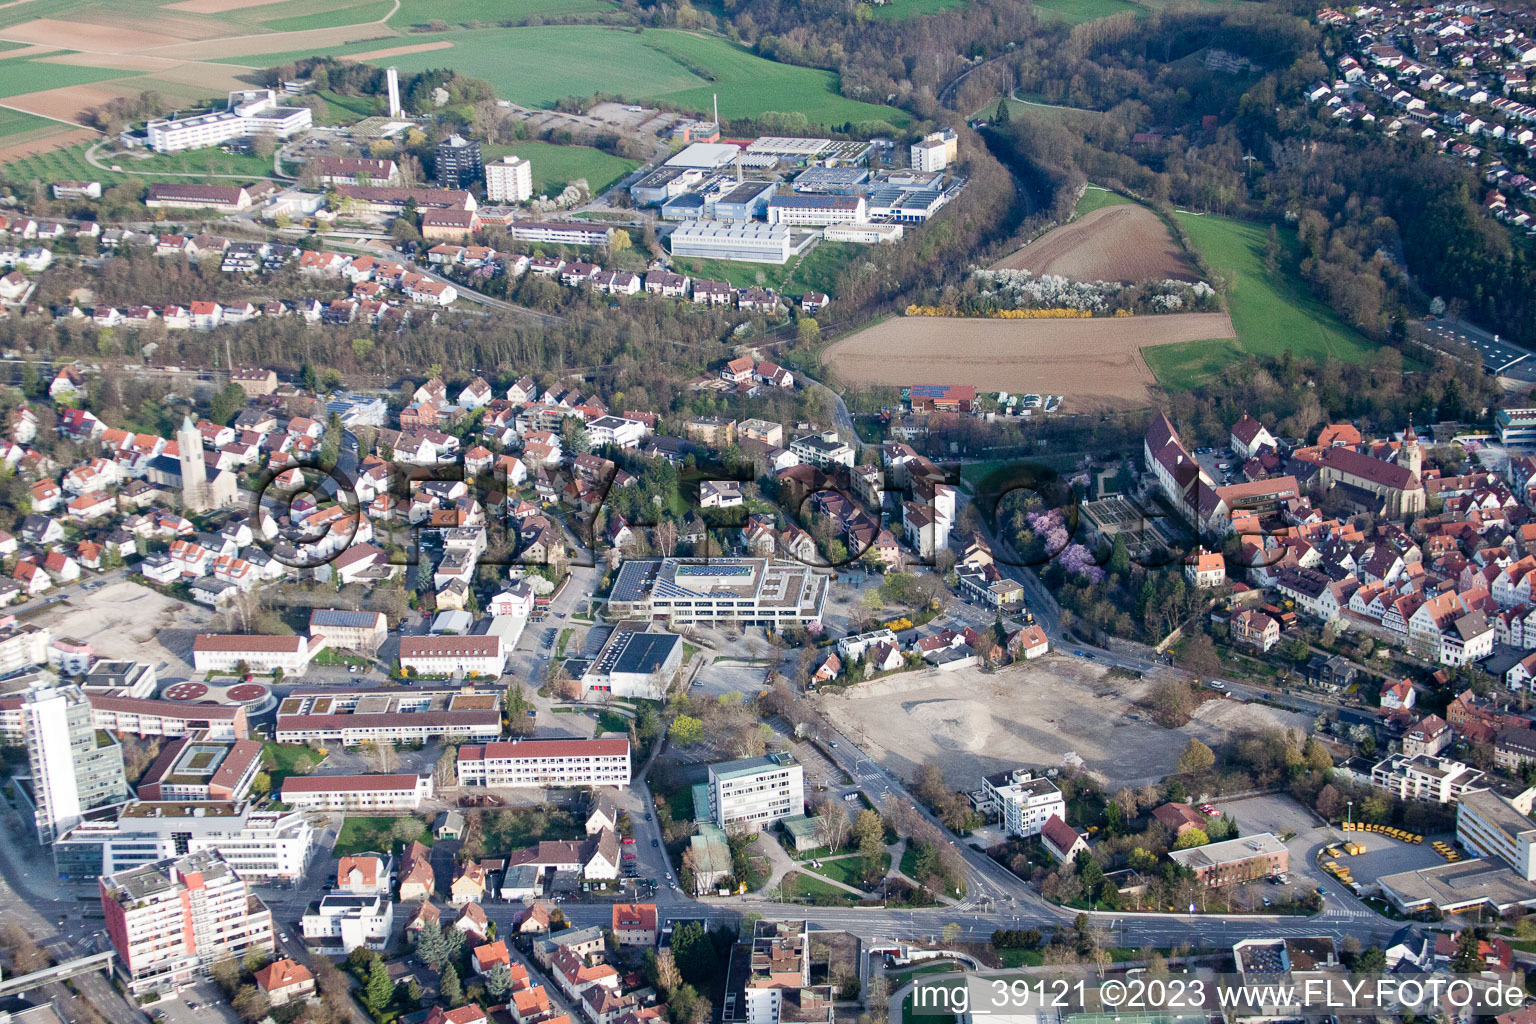 Drohnenbild von Johannes-Kepler-Gymnasium, Lindenstr in Leonberg im Bundesland Baden-Württemberg, Deutschland